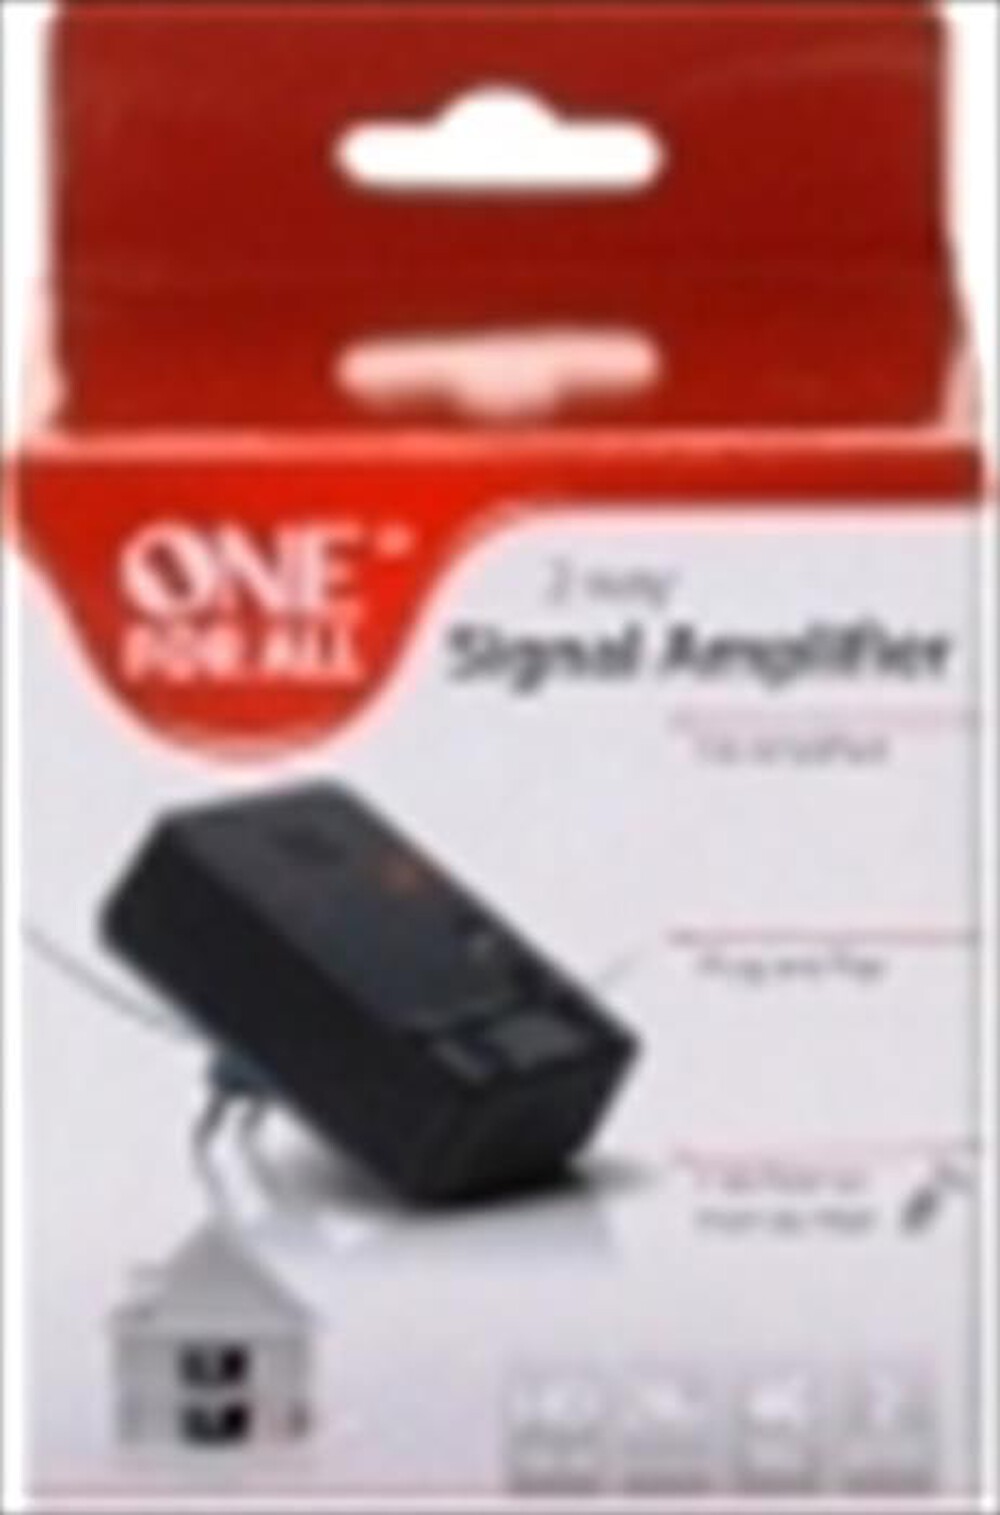 "ONE FOR ALL - Amplificatore di segnale digitale SV 9620 NEW-NERO"